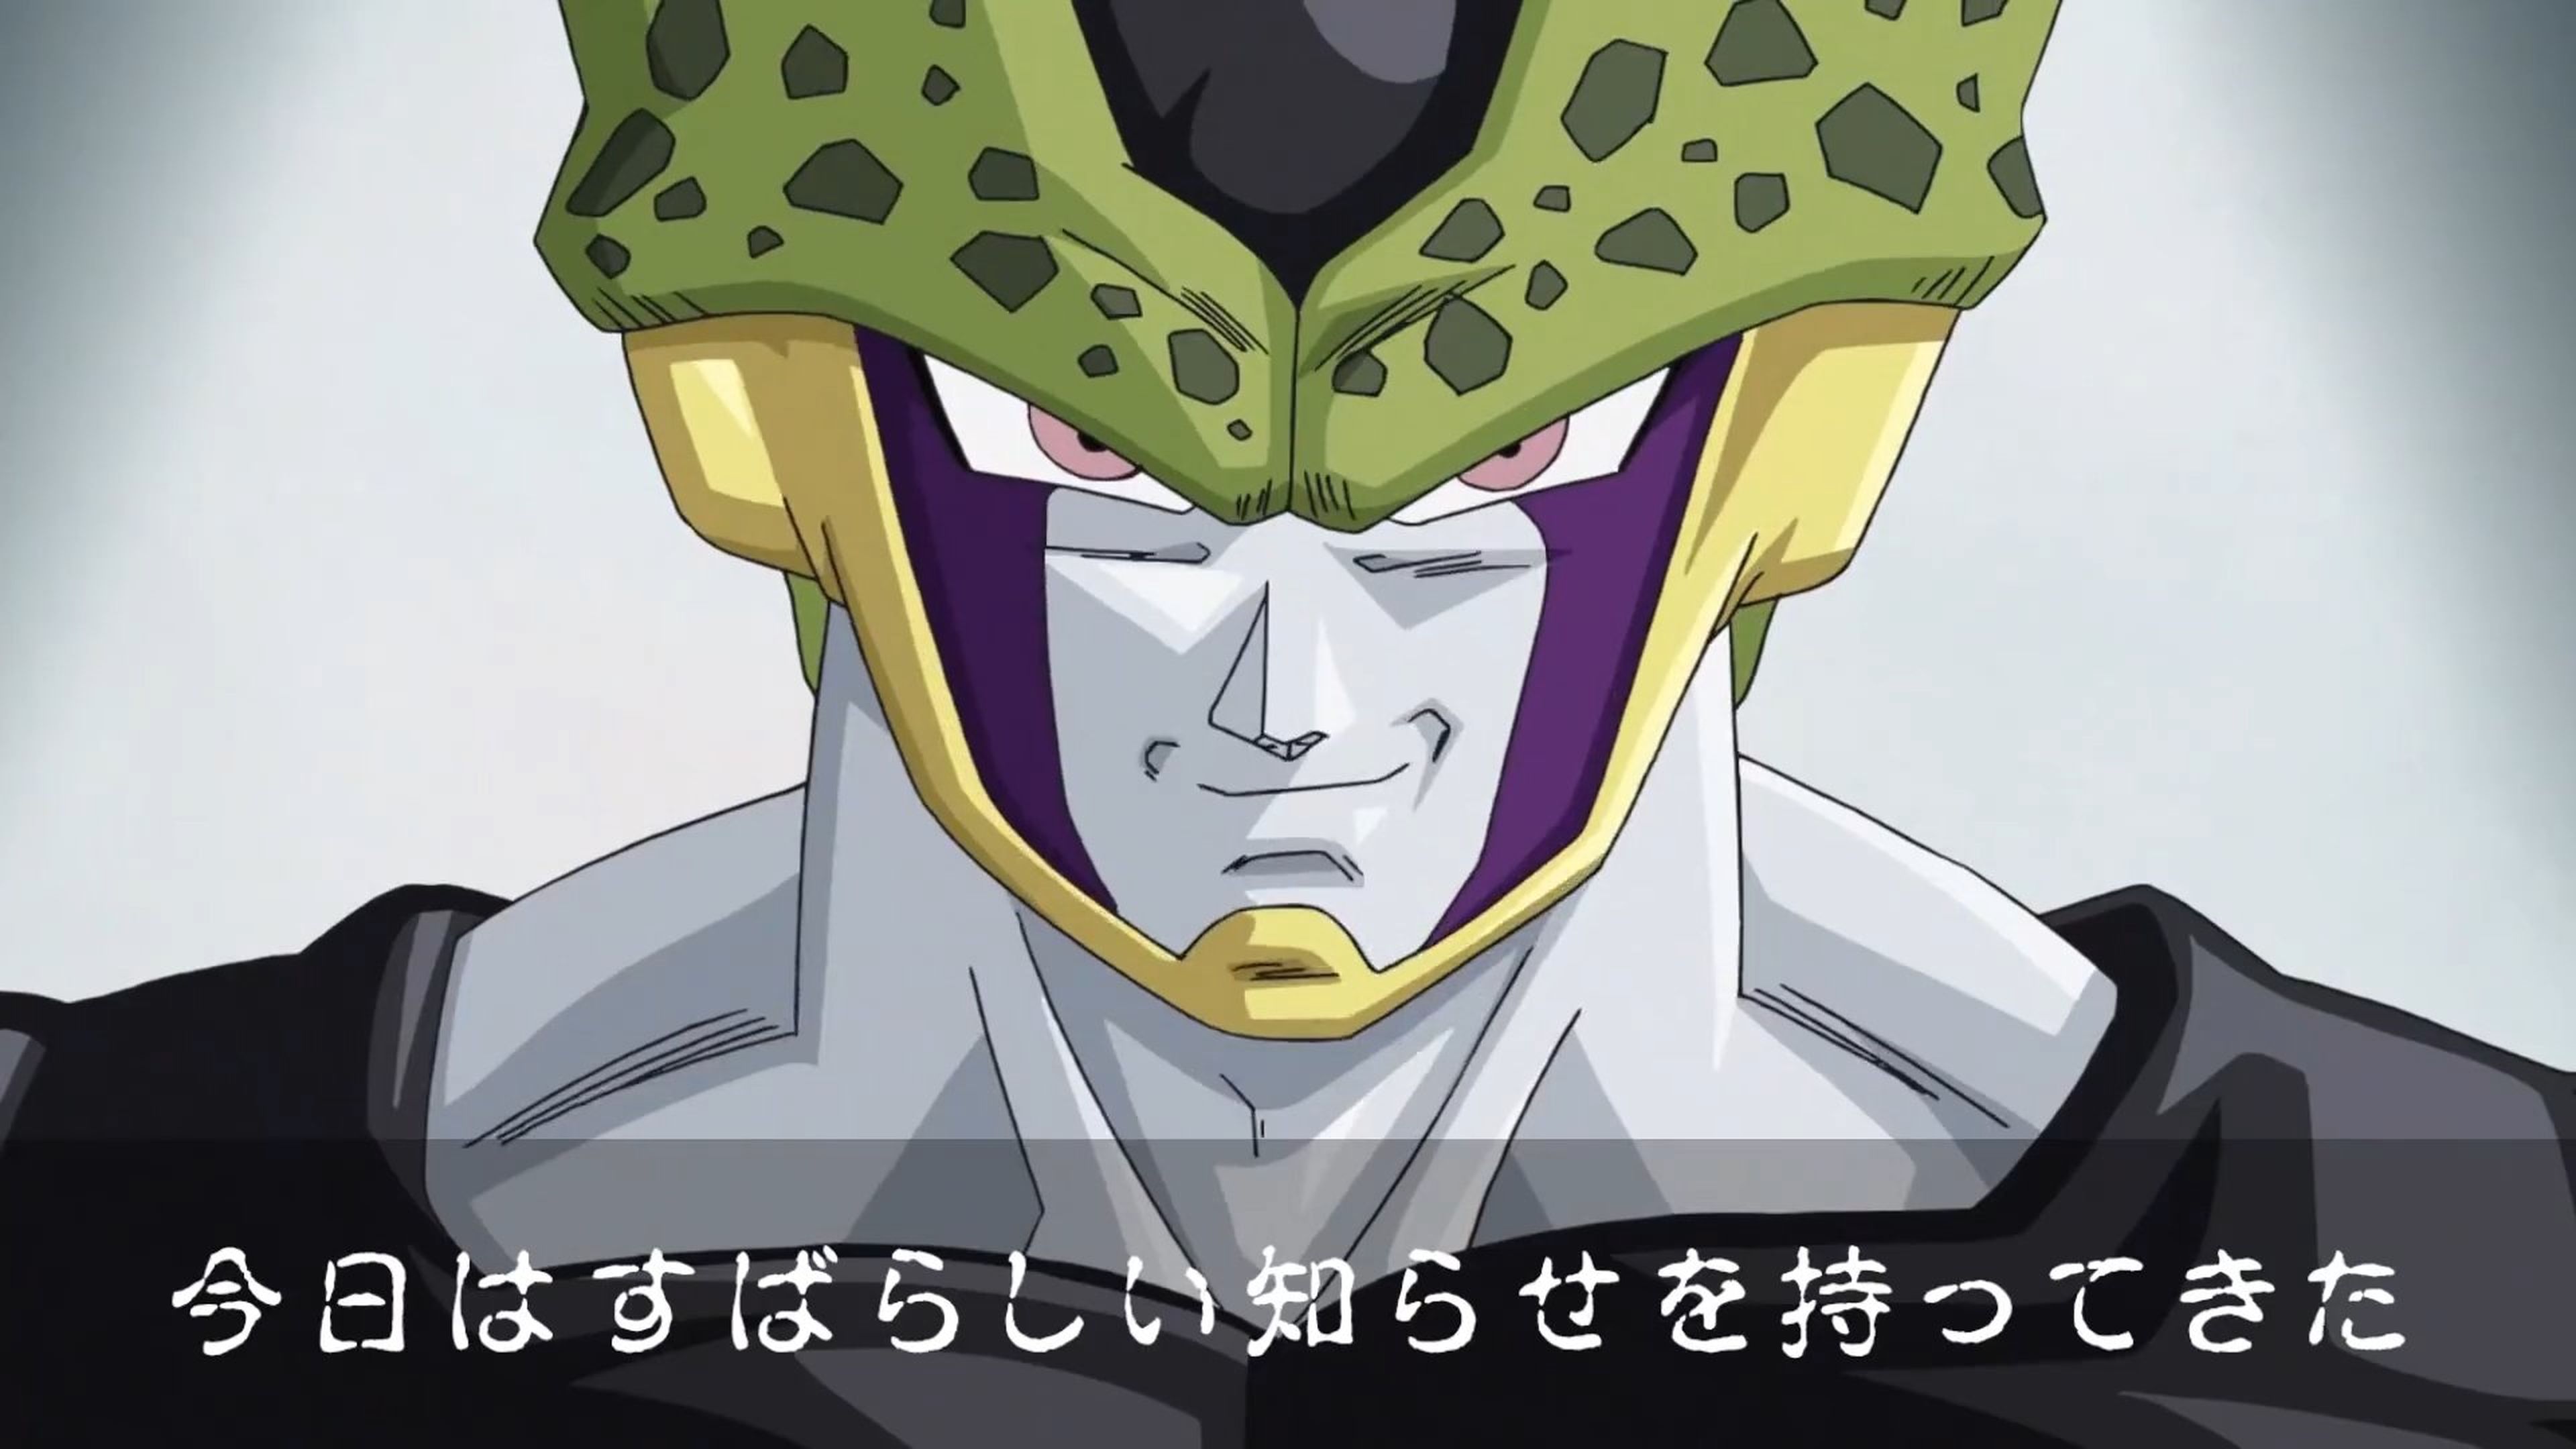 Dragon Ball - El impresionante anuncio de Cell en las pantallas de TV japonesas